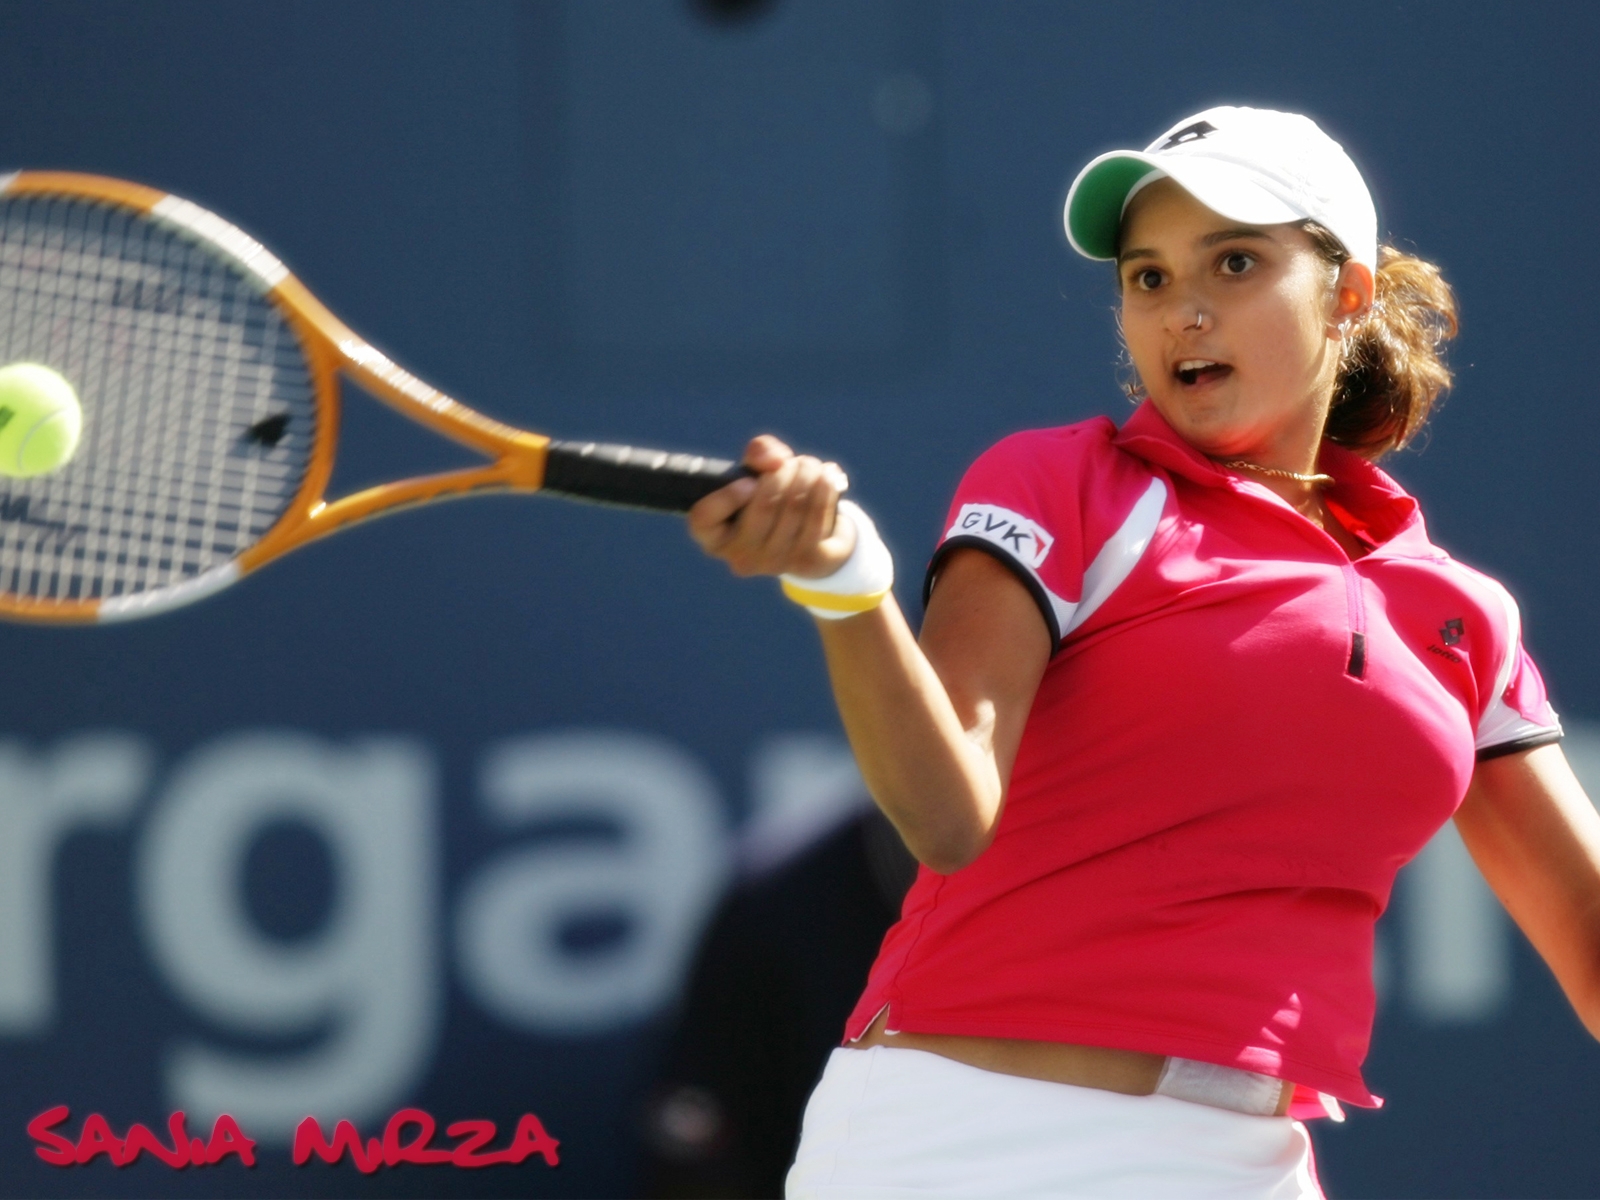 Sania mirza tennis | Sports Wallpapers1600 x 1200